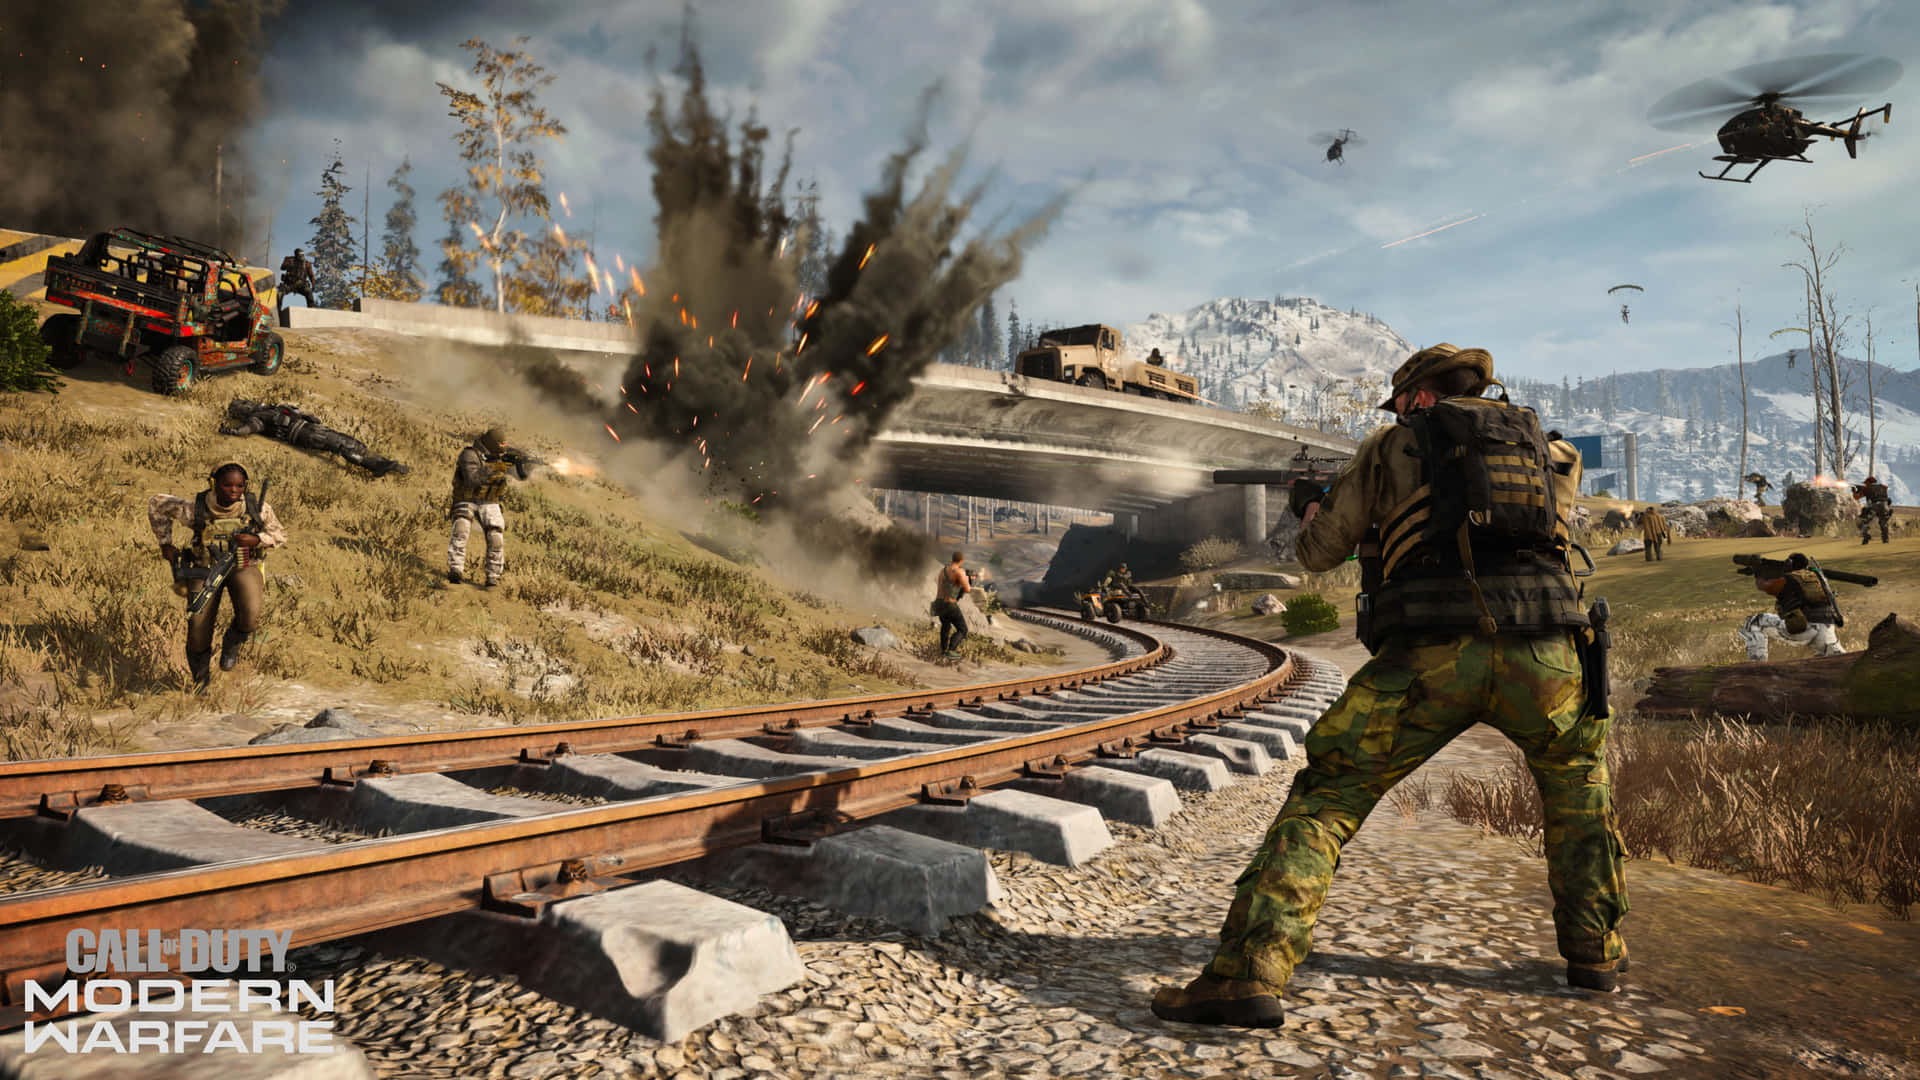 Call Of Duty Modern Warfare - Experience Epic Warfare